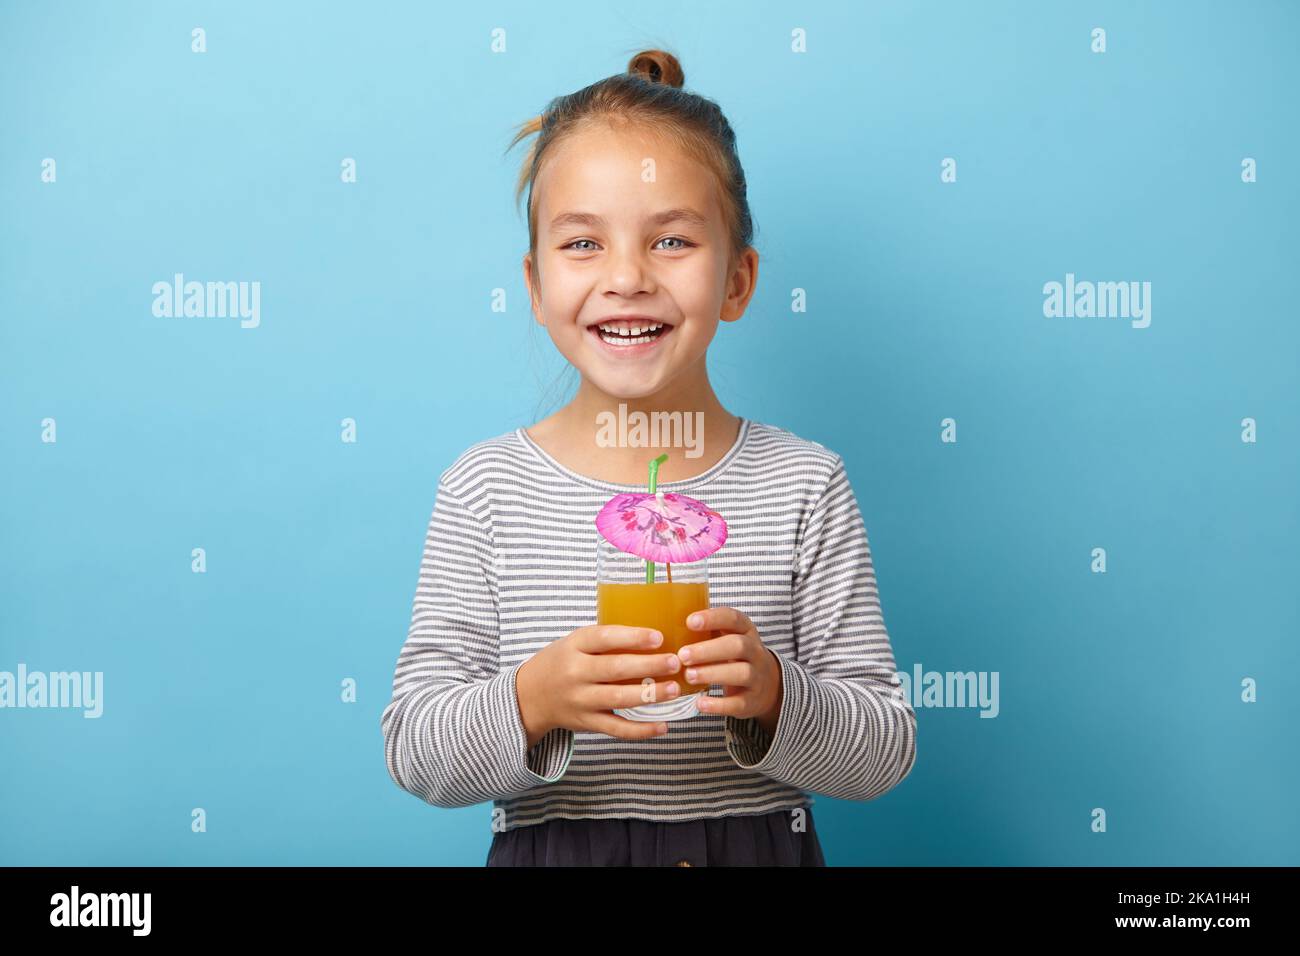 Alegre niña bebe jugo de naranja y se ríe, está sobre fondo azul aislado. Foto de stock